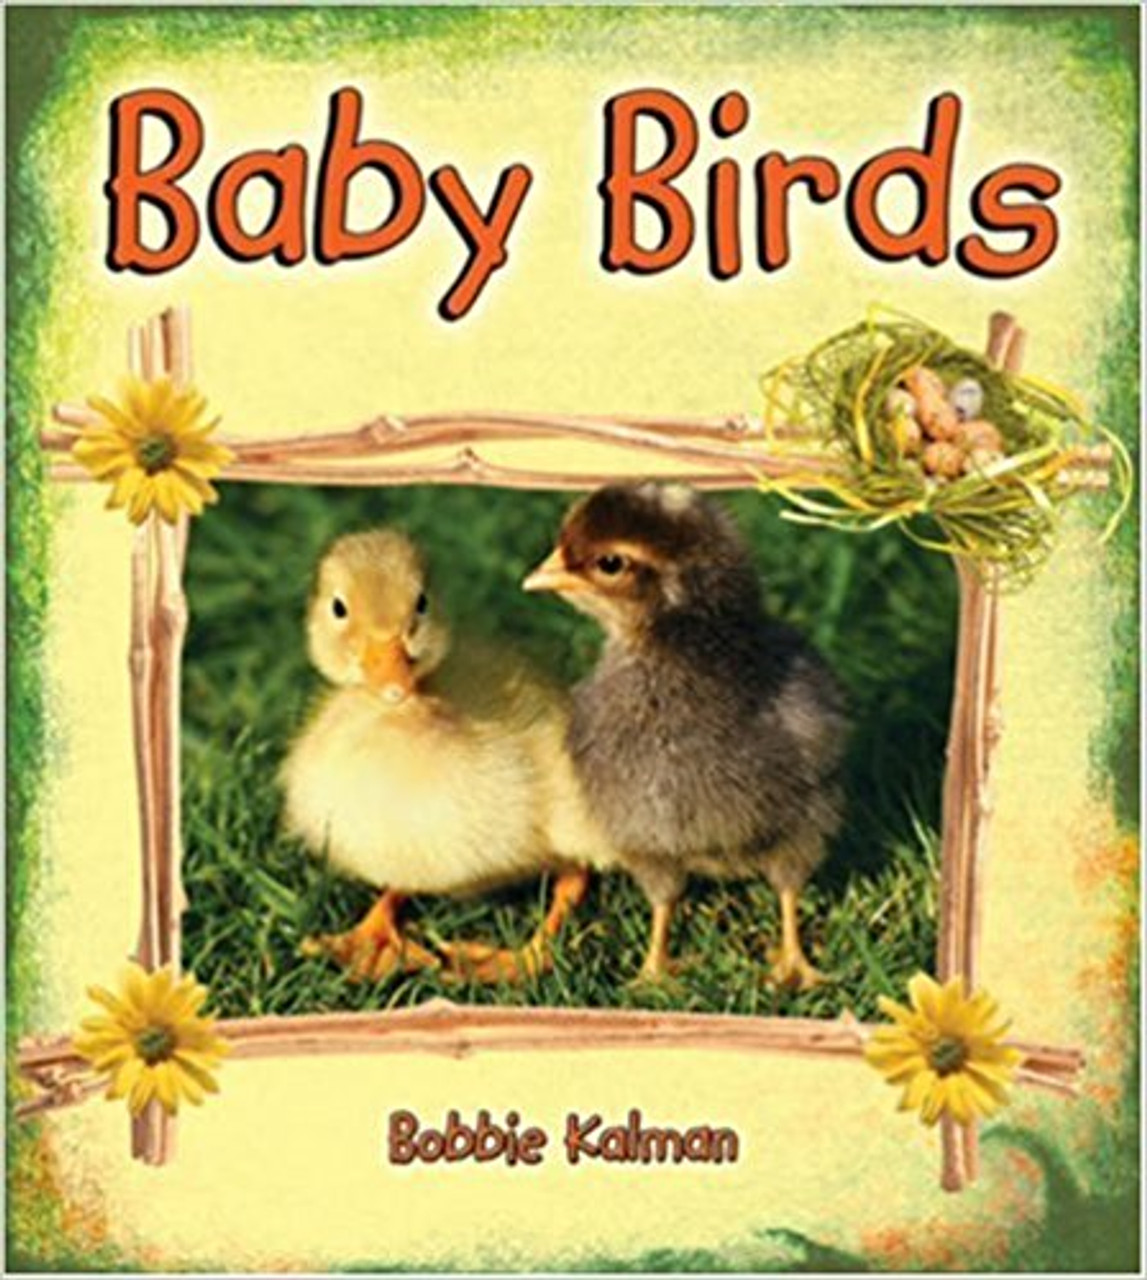 Baby Birds by Bobbie Kalman